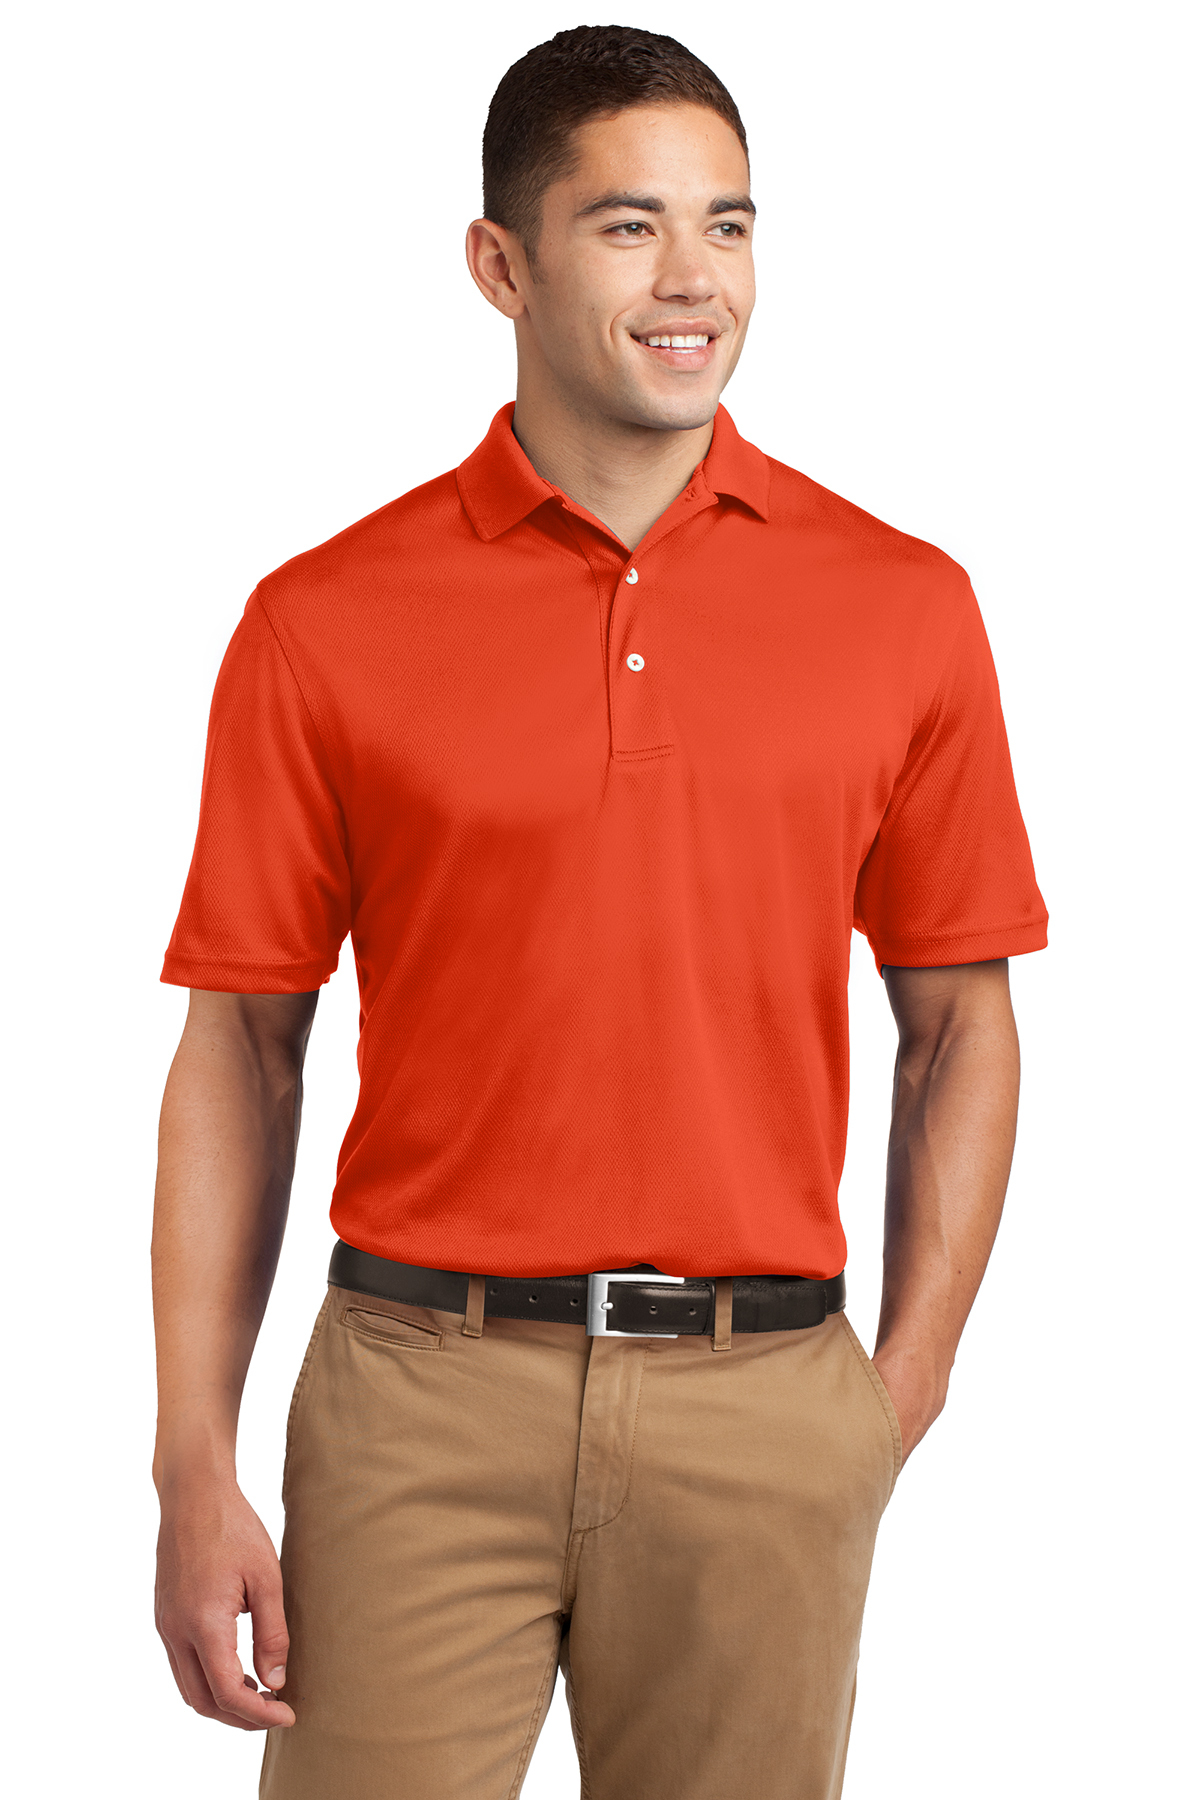 Men's lightweight shirt - Item No. K469